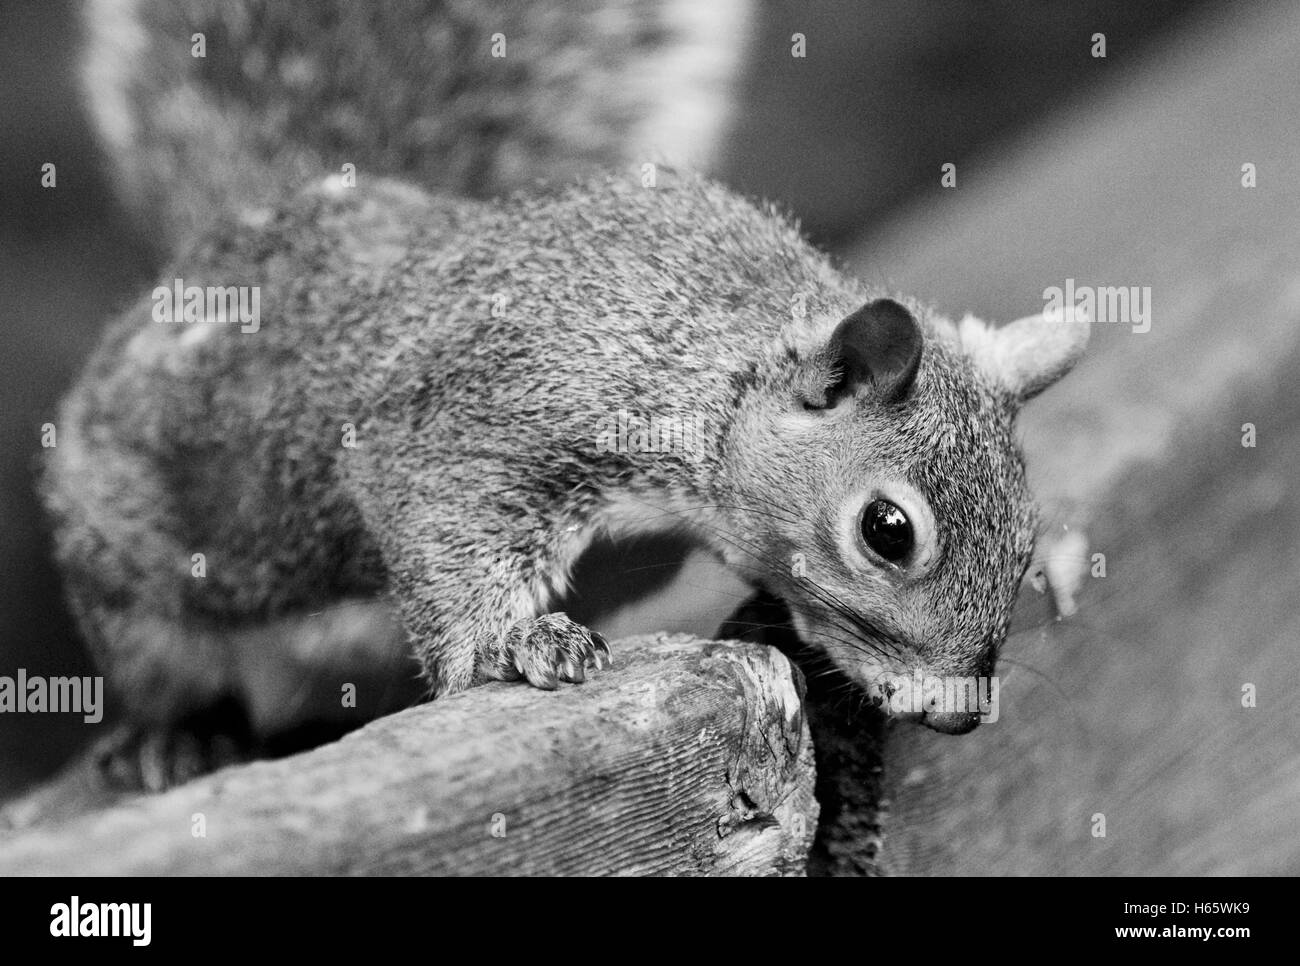 Schöne schwarz / weiß Bild mit einem netten lustigen neugierig Eichhörnchen Stockfoto